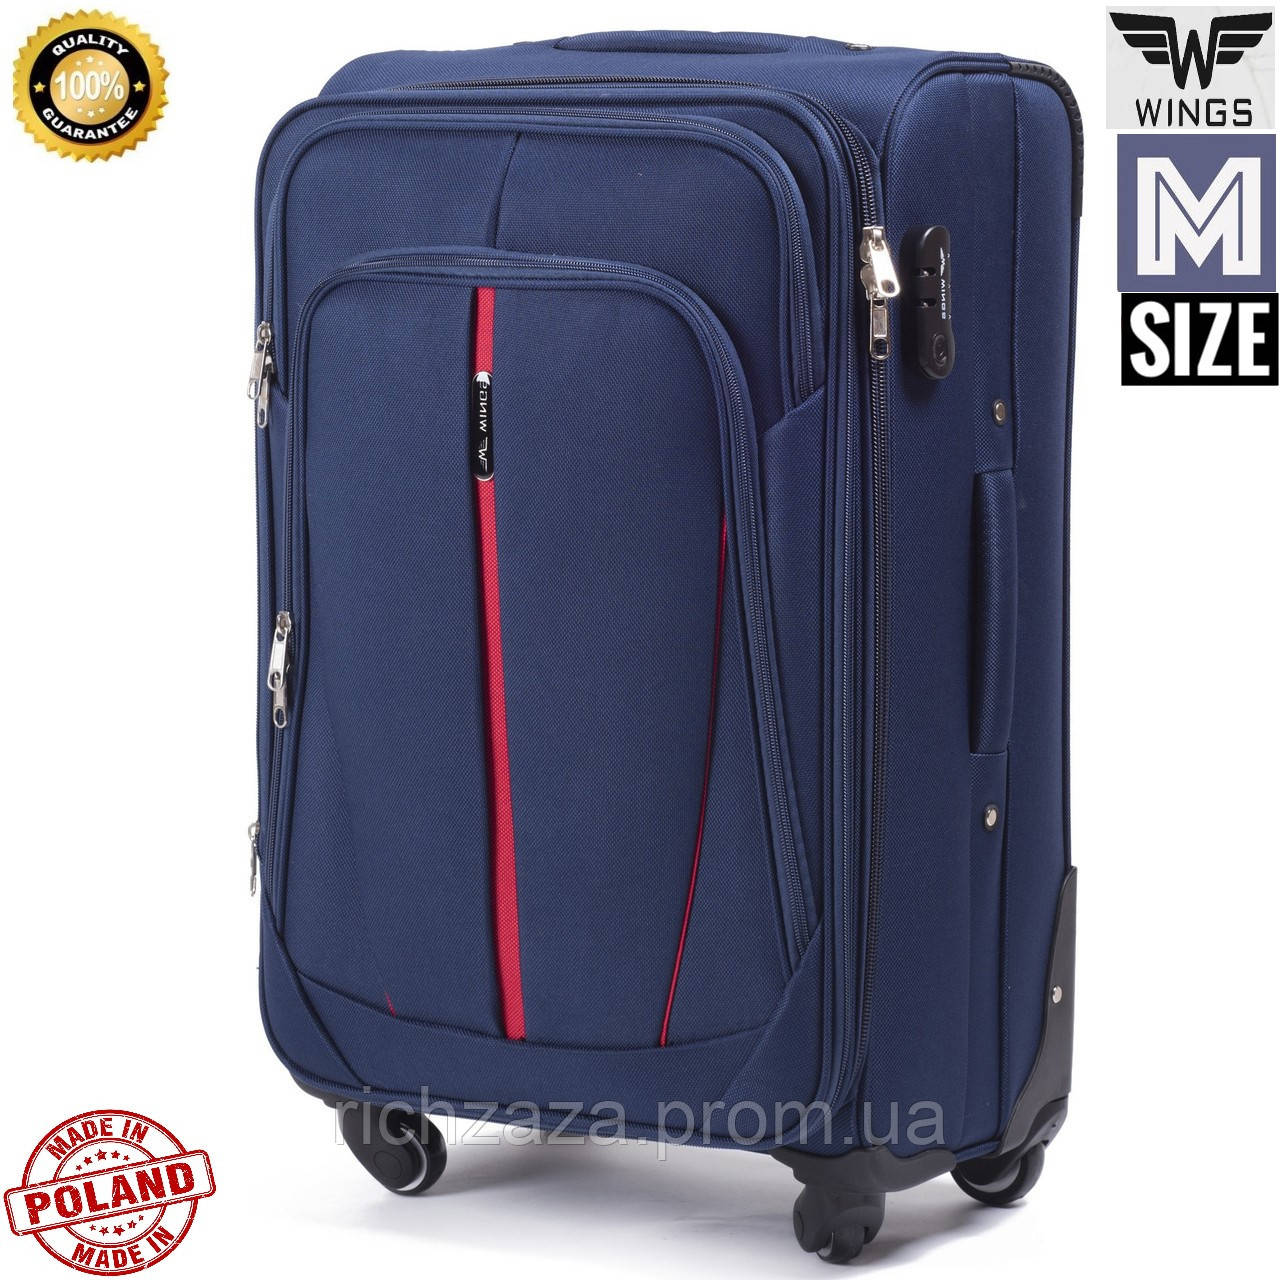 

Средний качественный дорожный чемодан на 4 колесах синий фирма Wings Одесса Украина Дорожные сумки и чемоданы